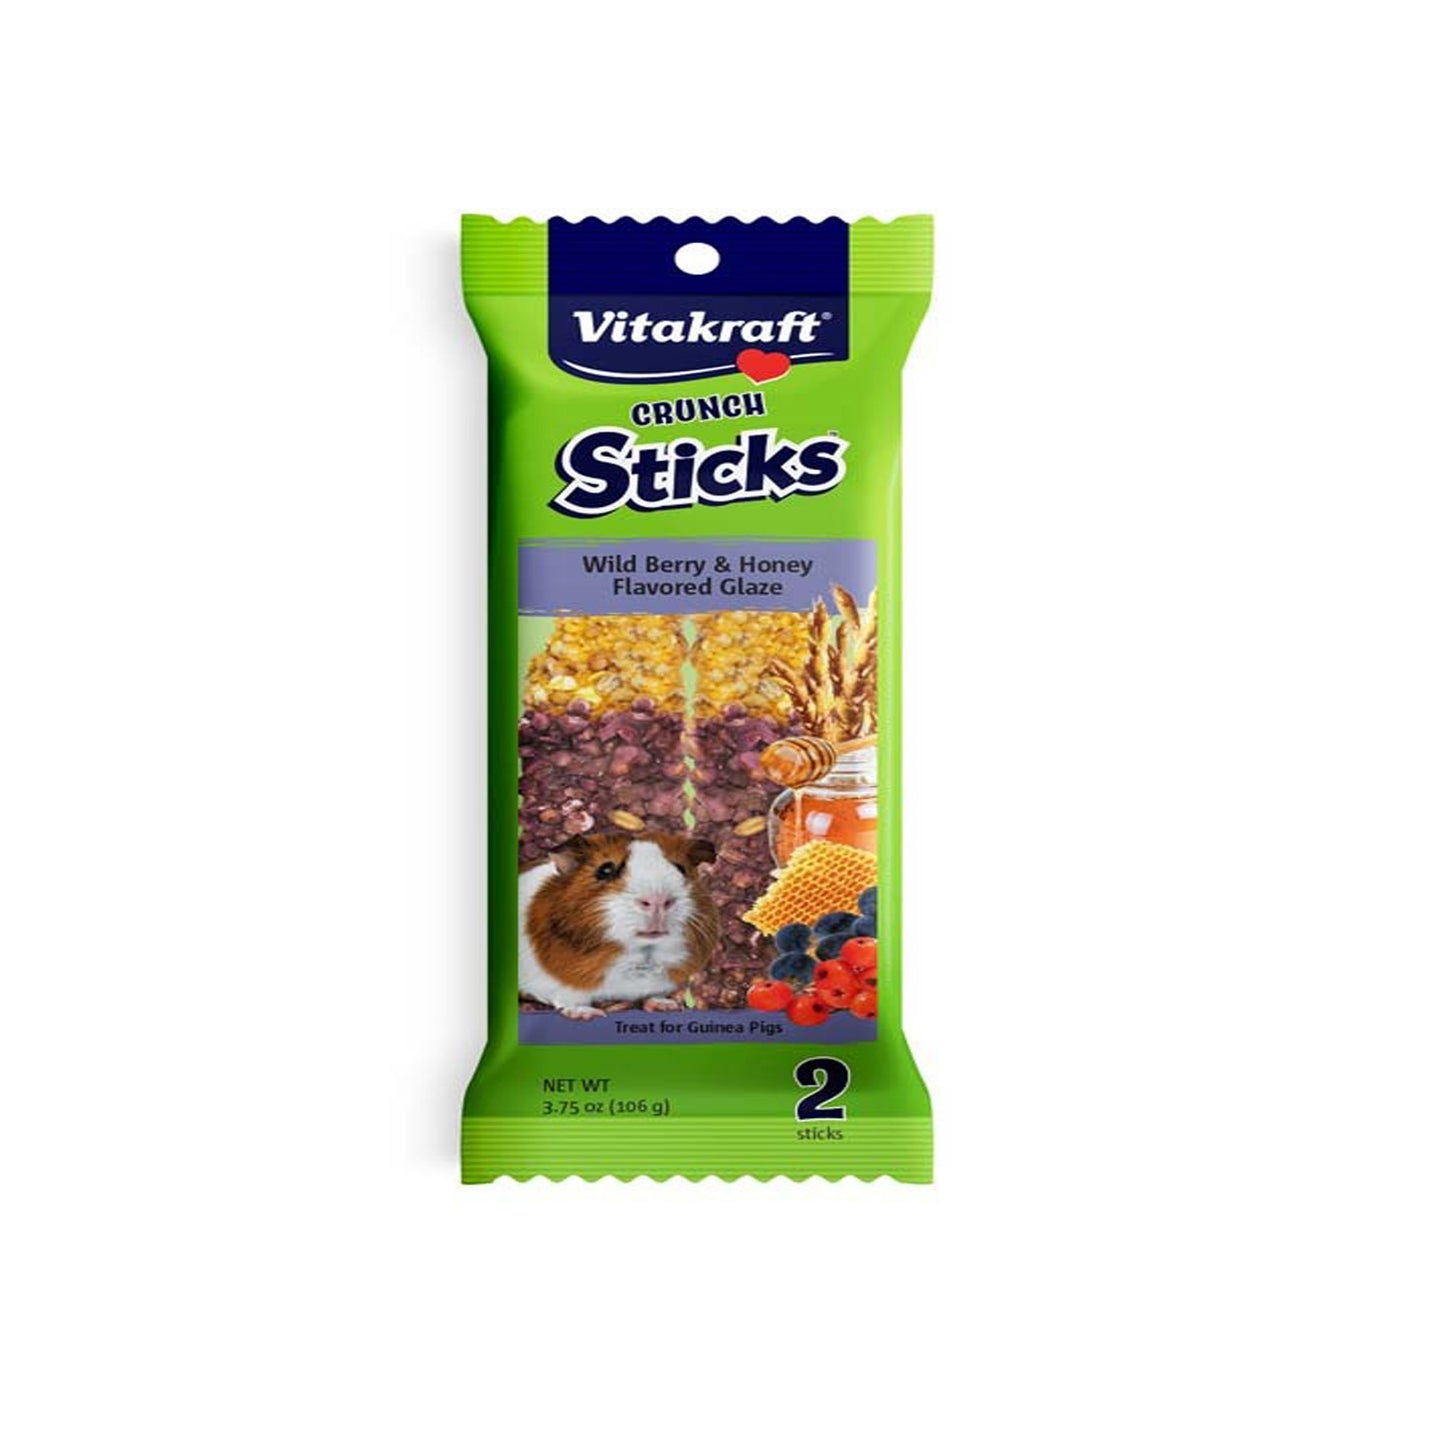 Vitakraft Crunch Sticks Guinea Pig Treats Wild Berry & Honey 1ea/3.75 oz, 2 ct